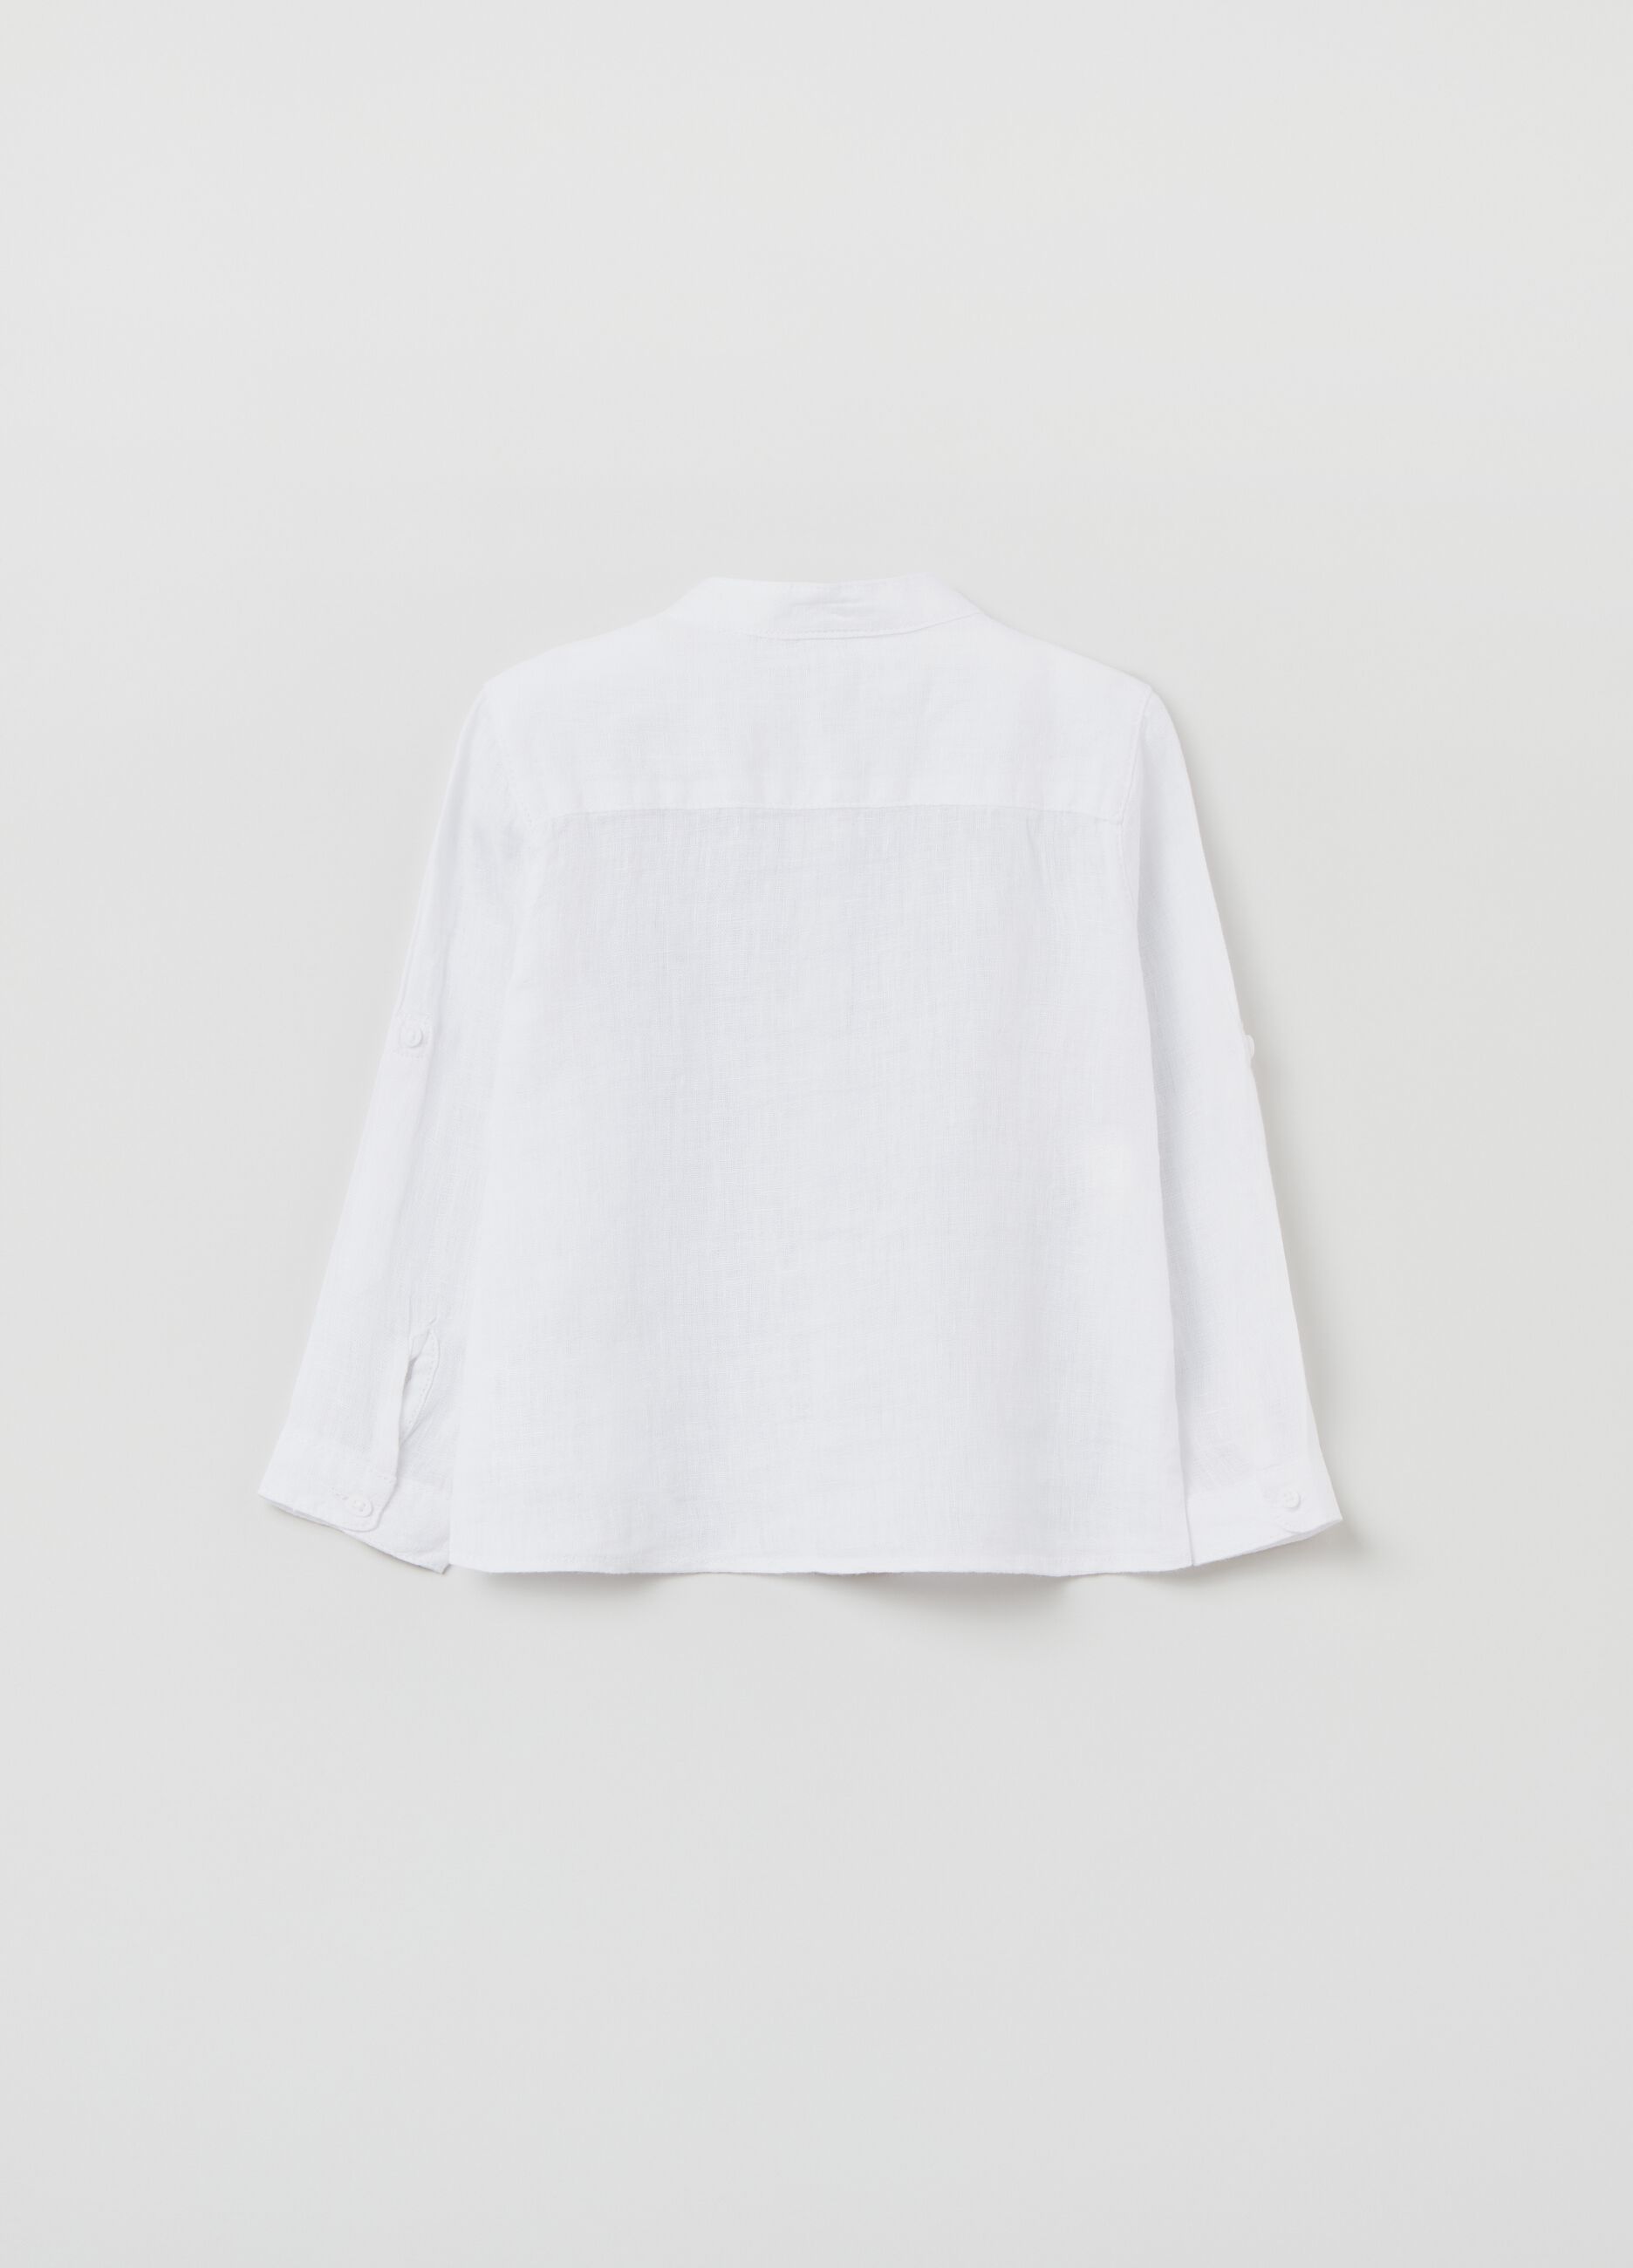 100% linen shirt